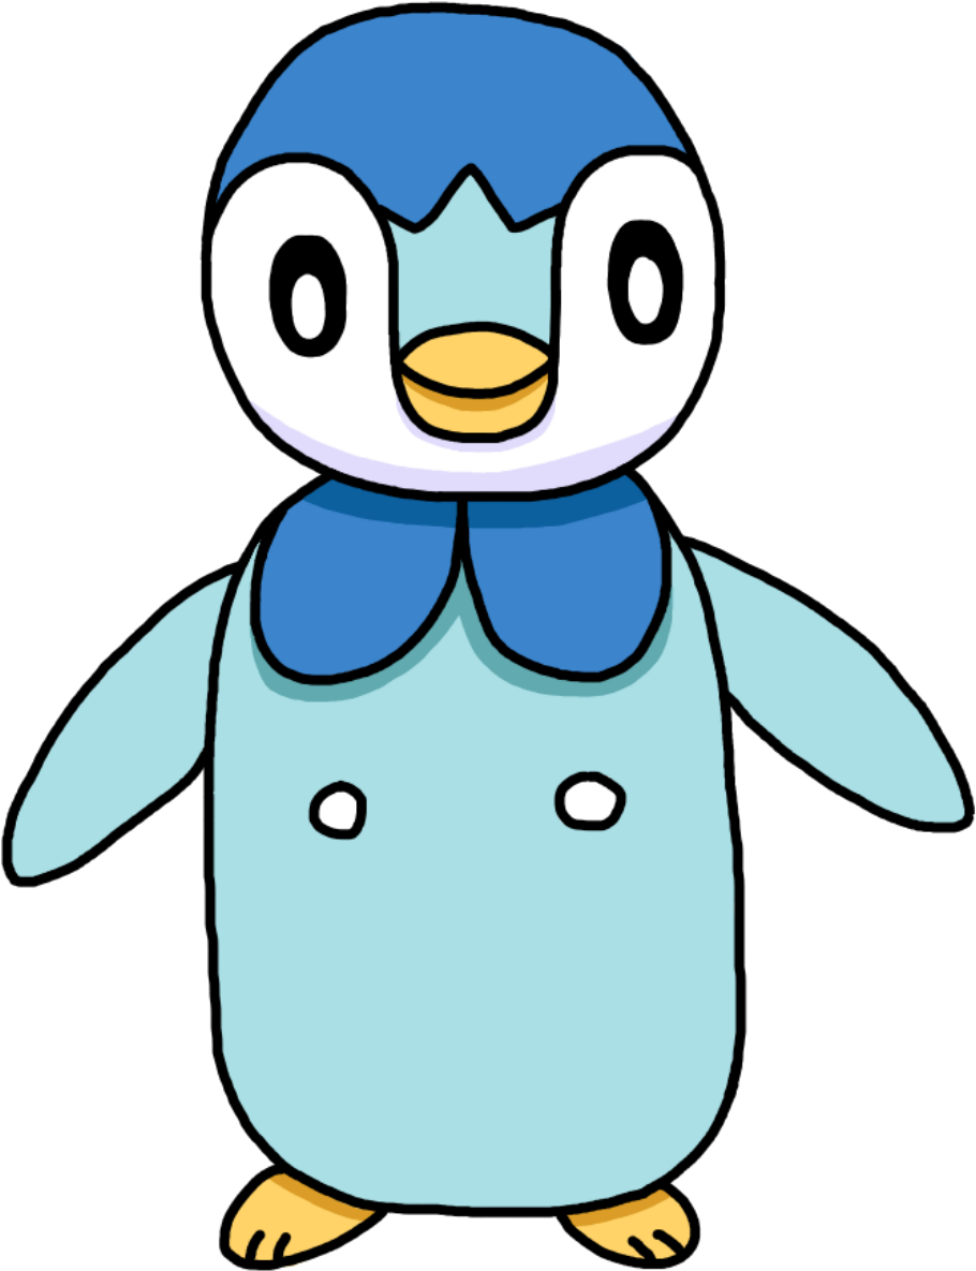 Покемон пингвин. Пингвин на Pascal. Покемон Пингвинчик. Синий Пингвин покемон.